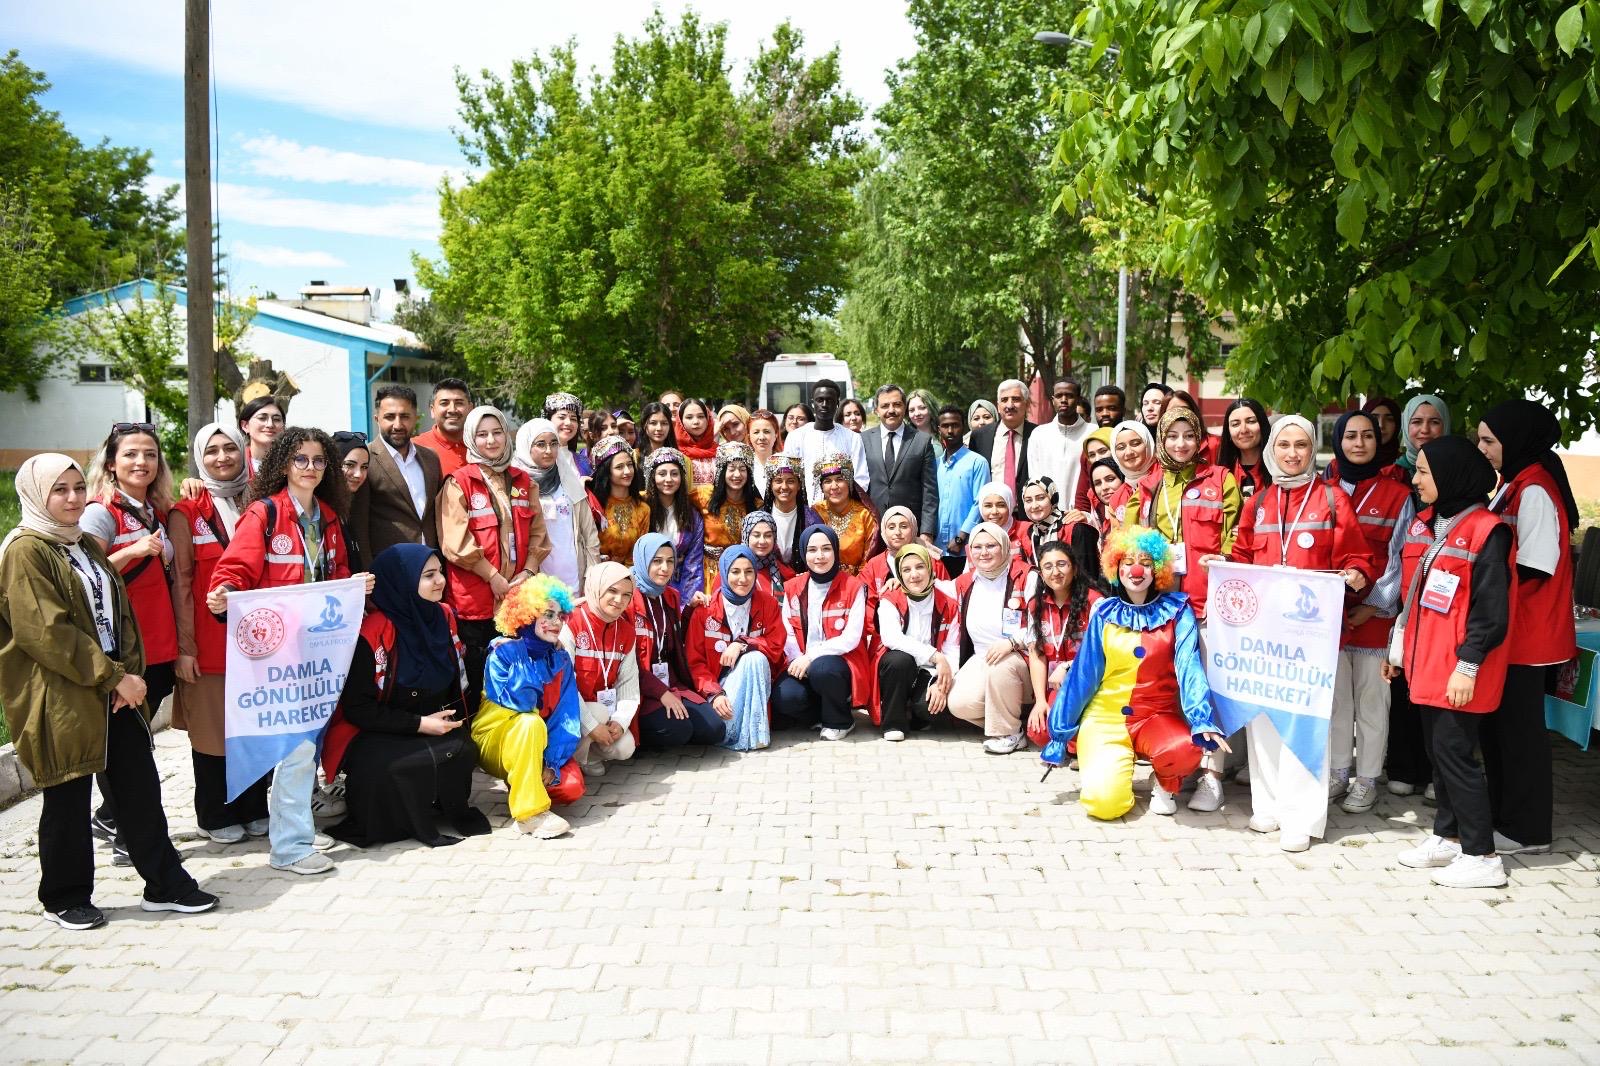 Malatya'da 'Damla Gönüllük Hareketi' Projesi